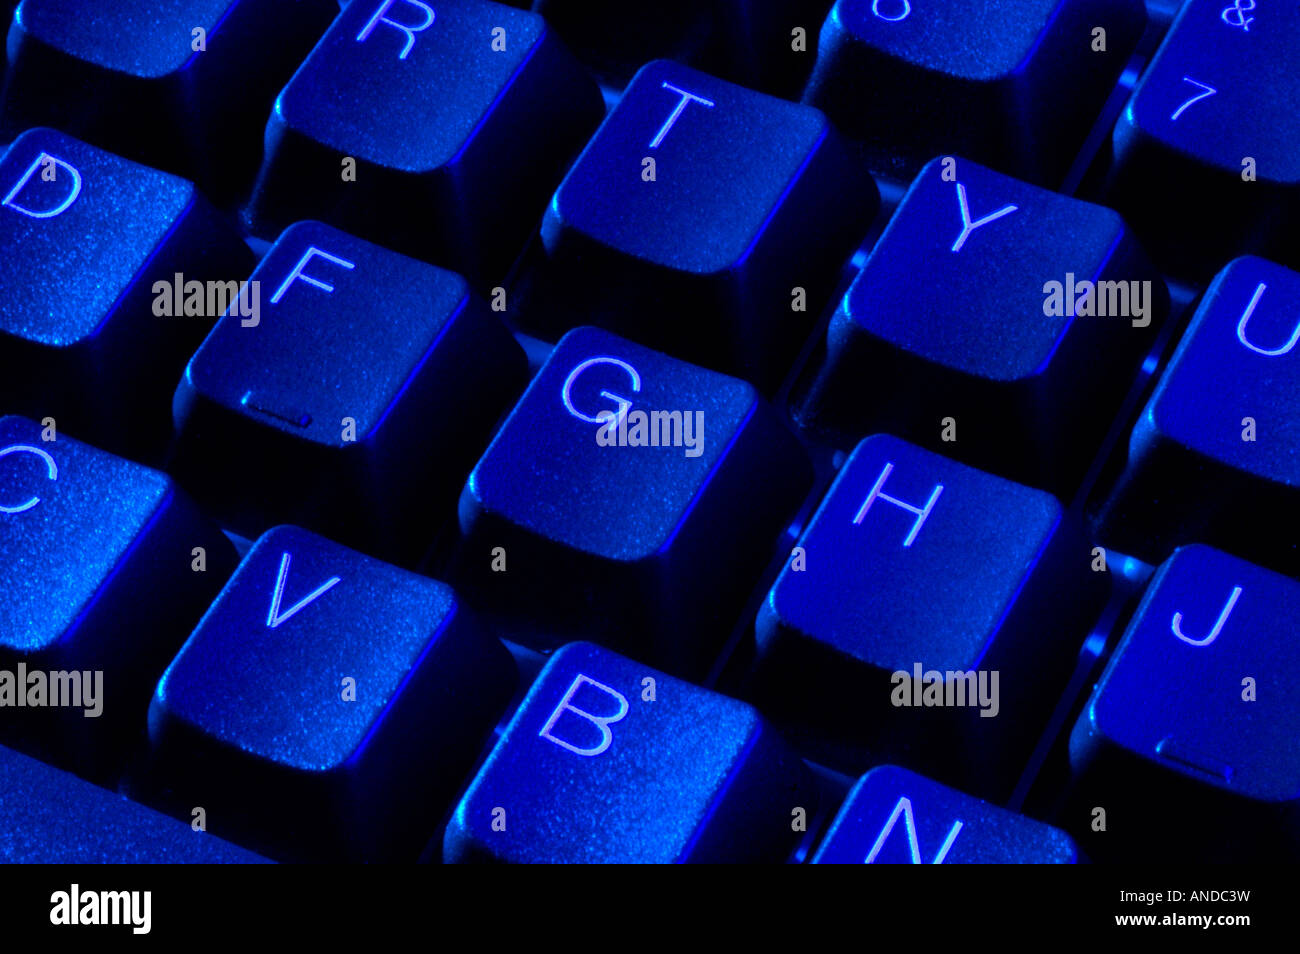 Equipo azul teclado alfanumérico con teclas QWERTY Foto de stock